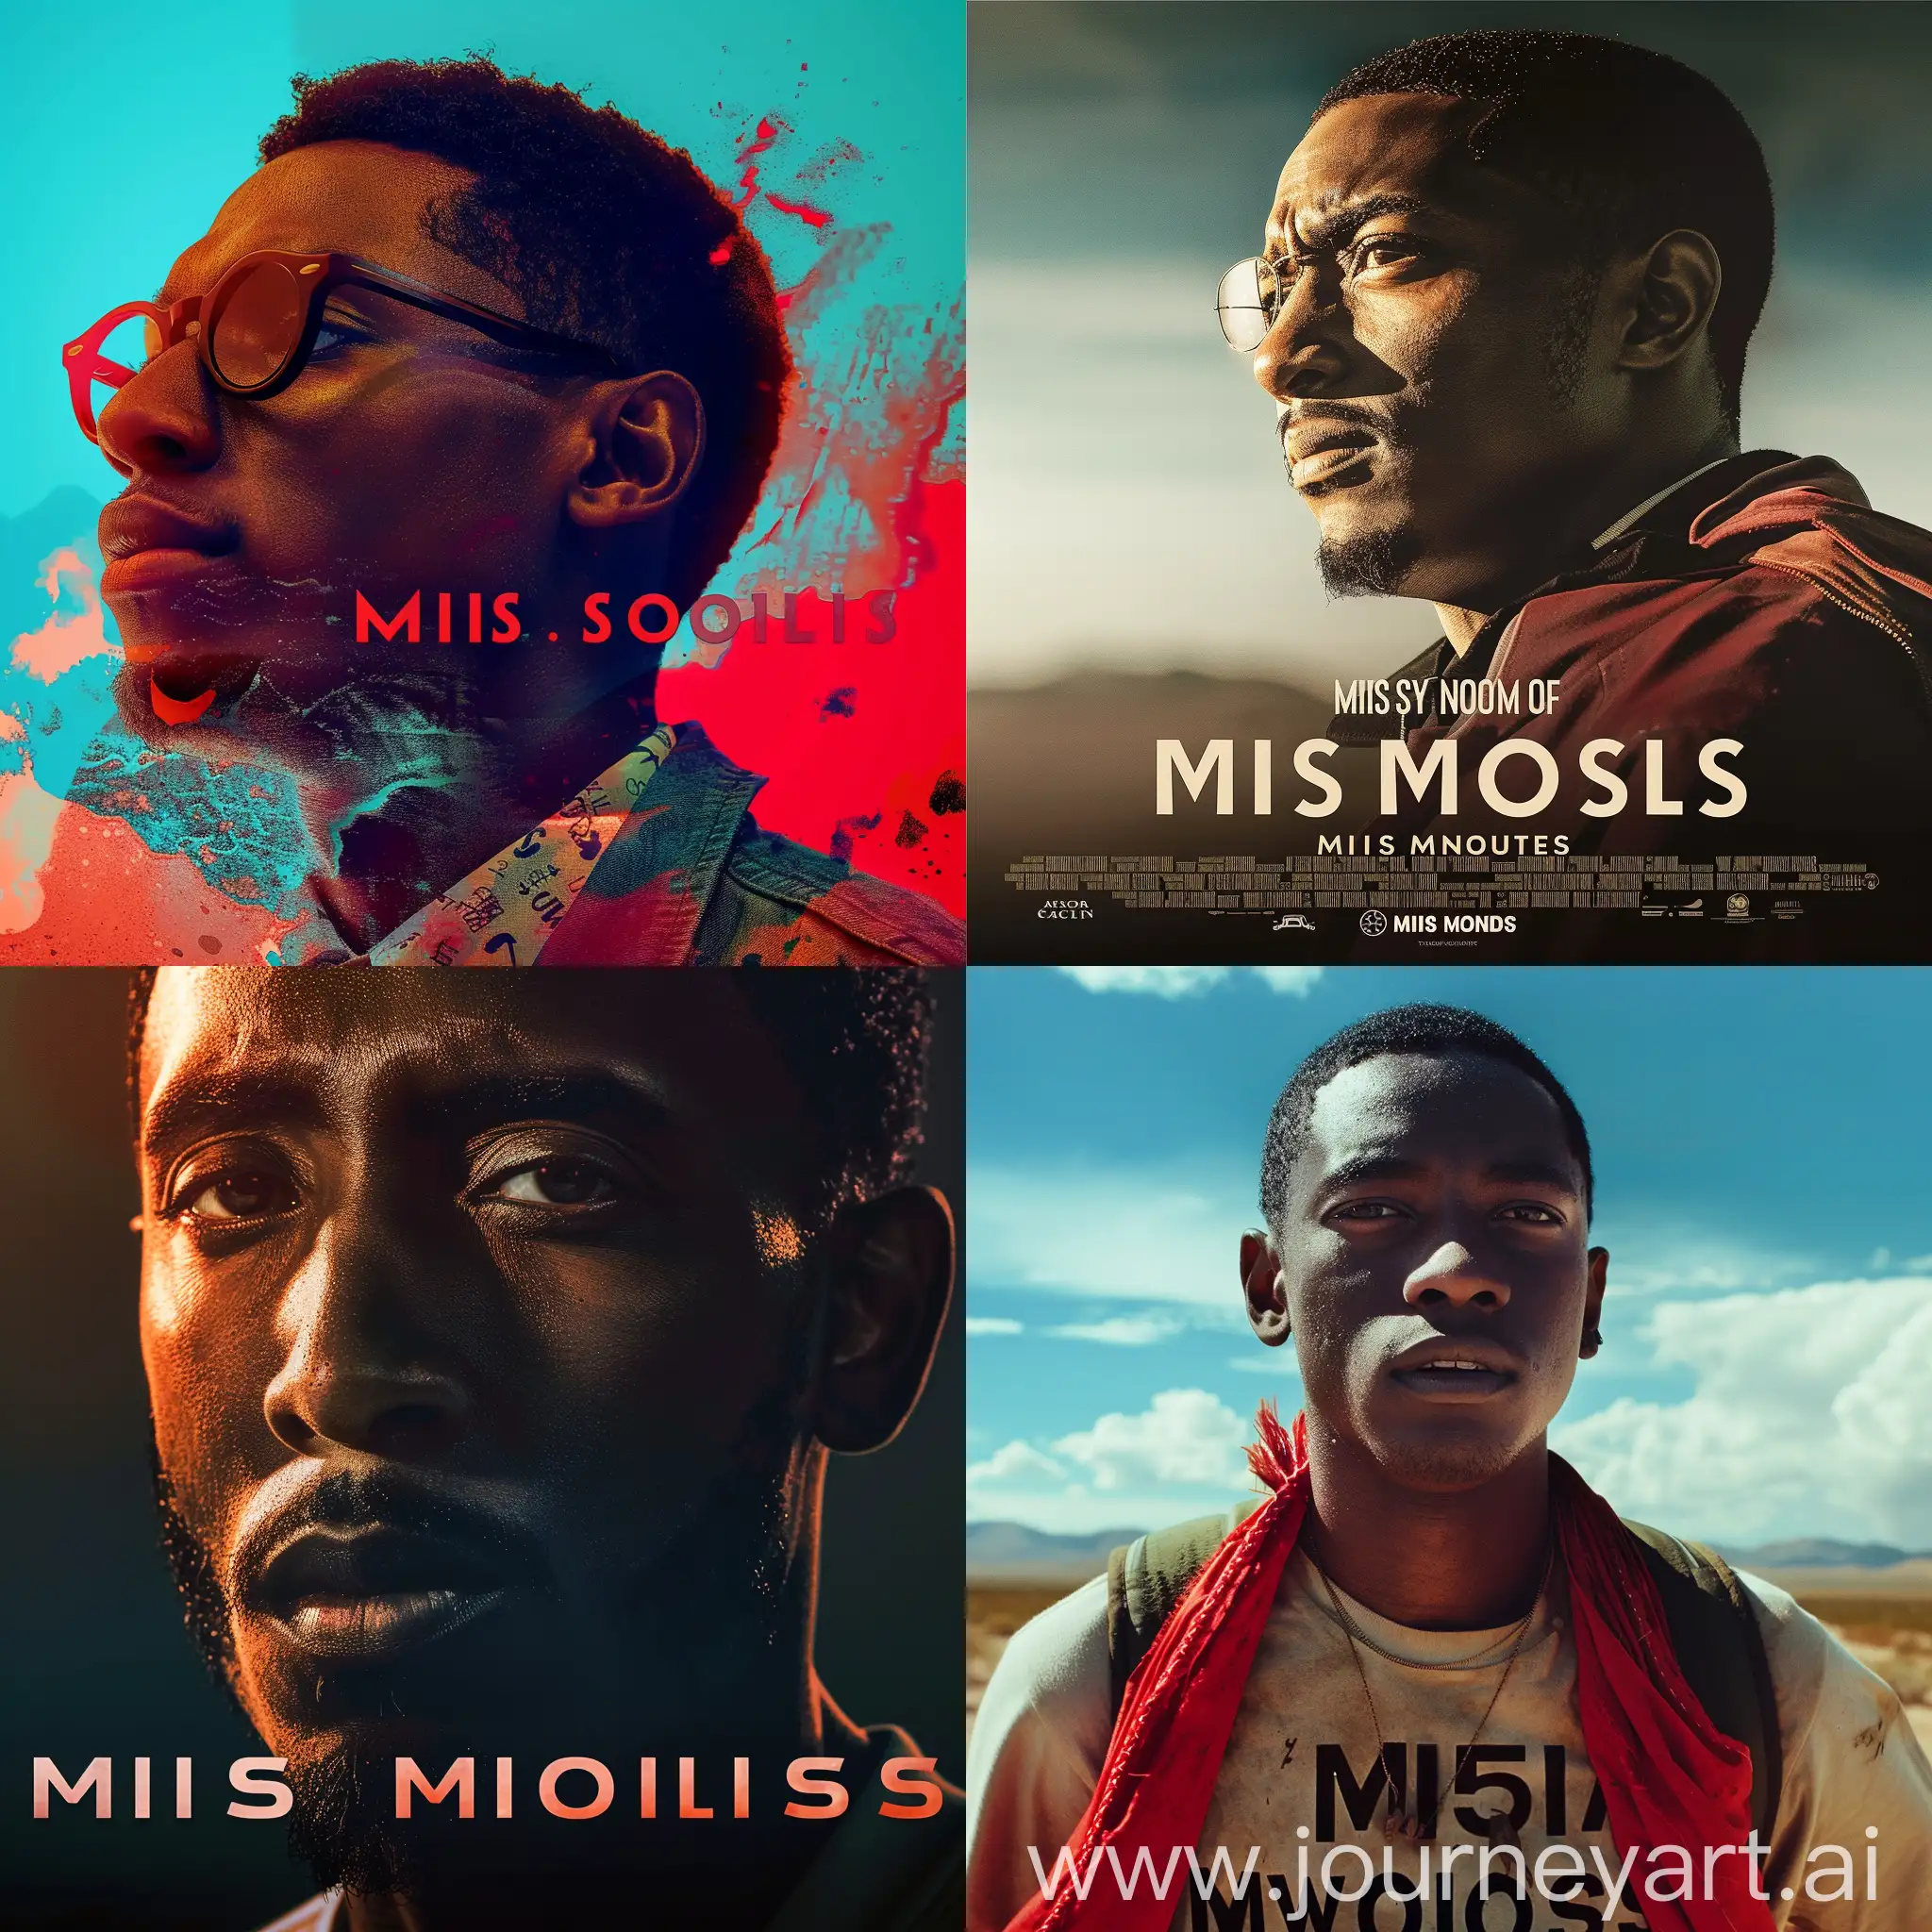 miles morales film poster
